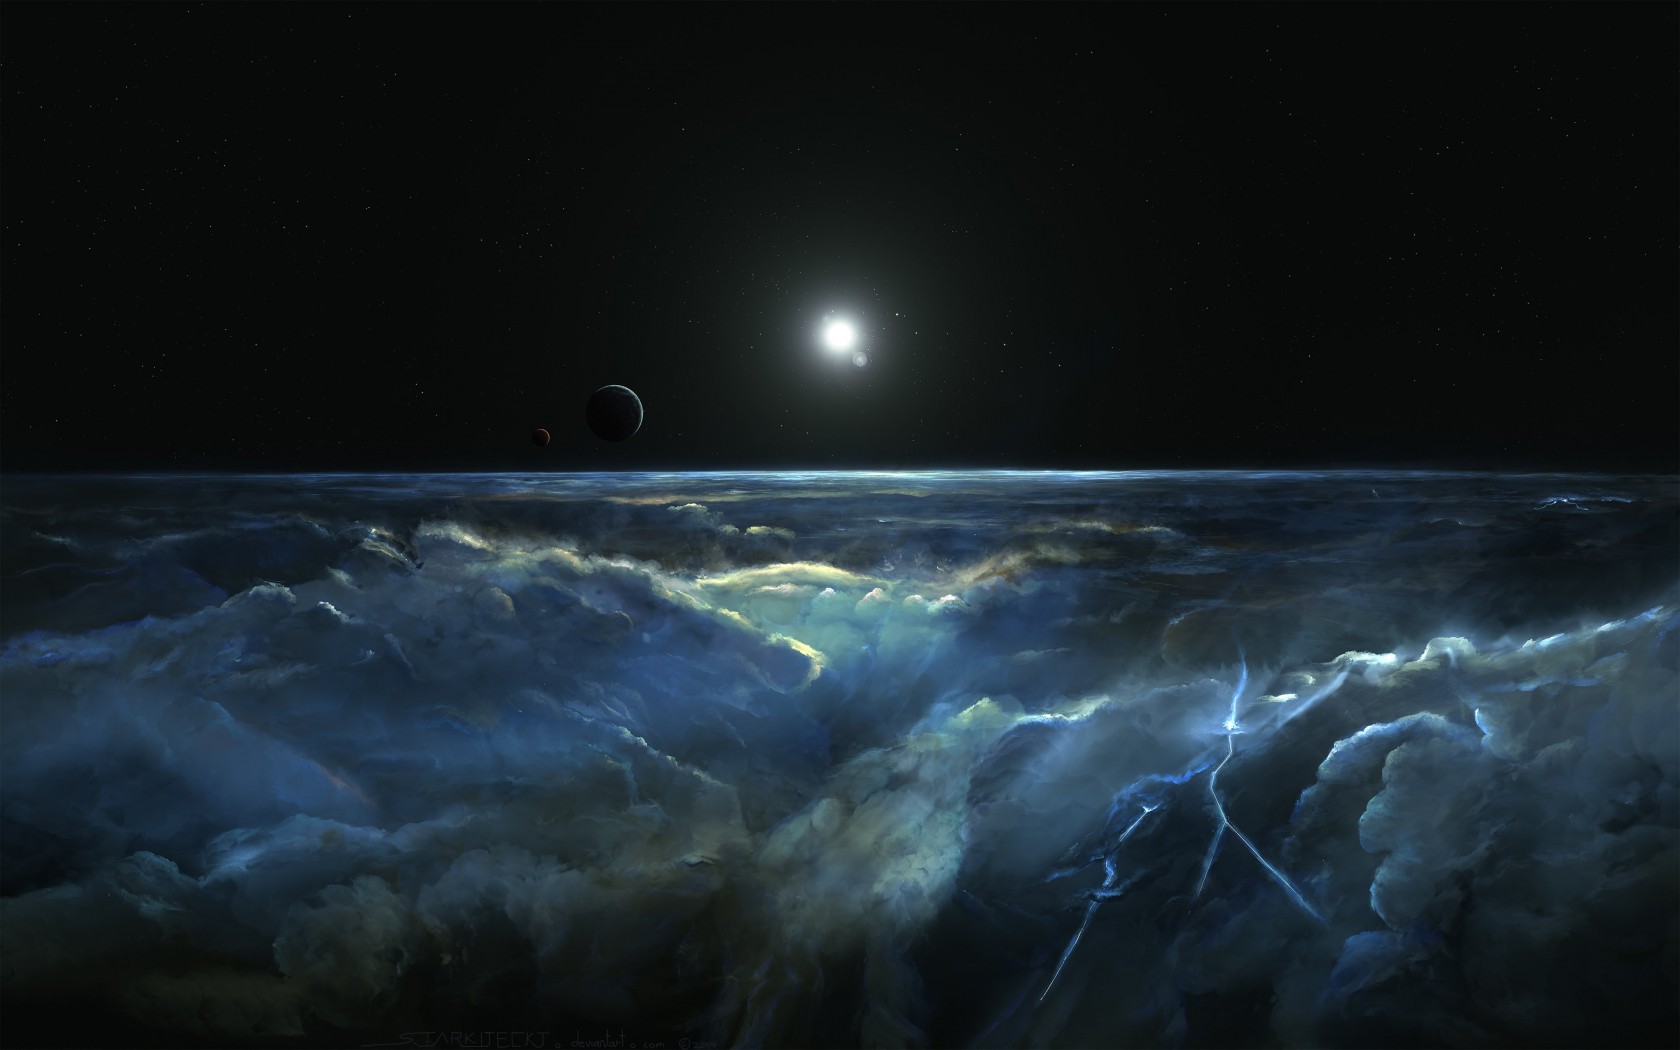 Stormy Atmosphere of Merphlyn Wallpaper for Desktop 1680x1050